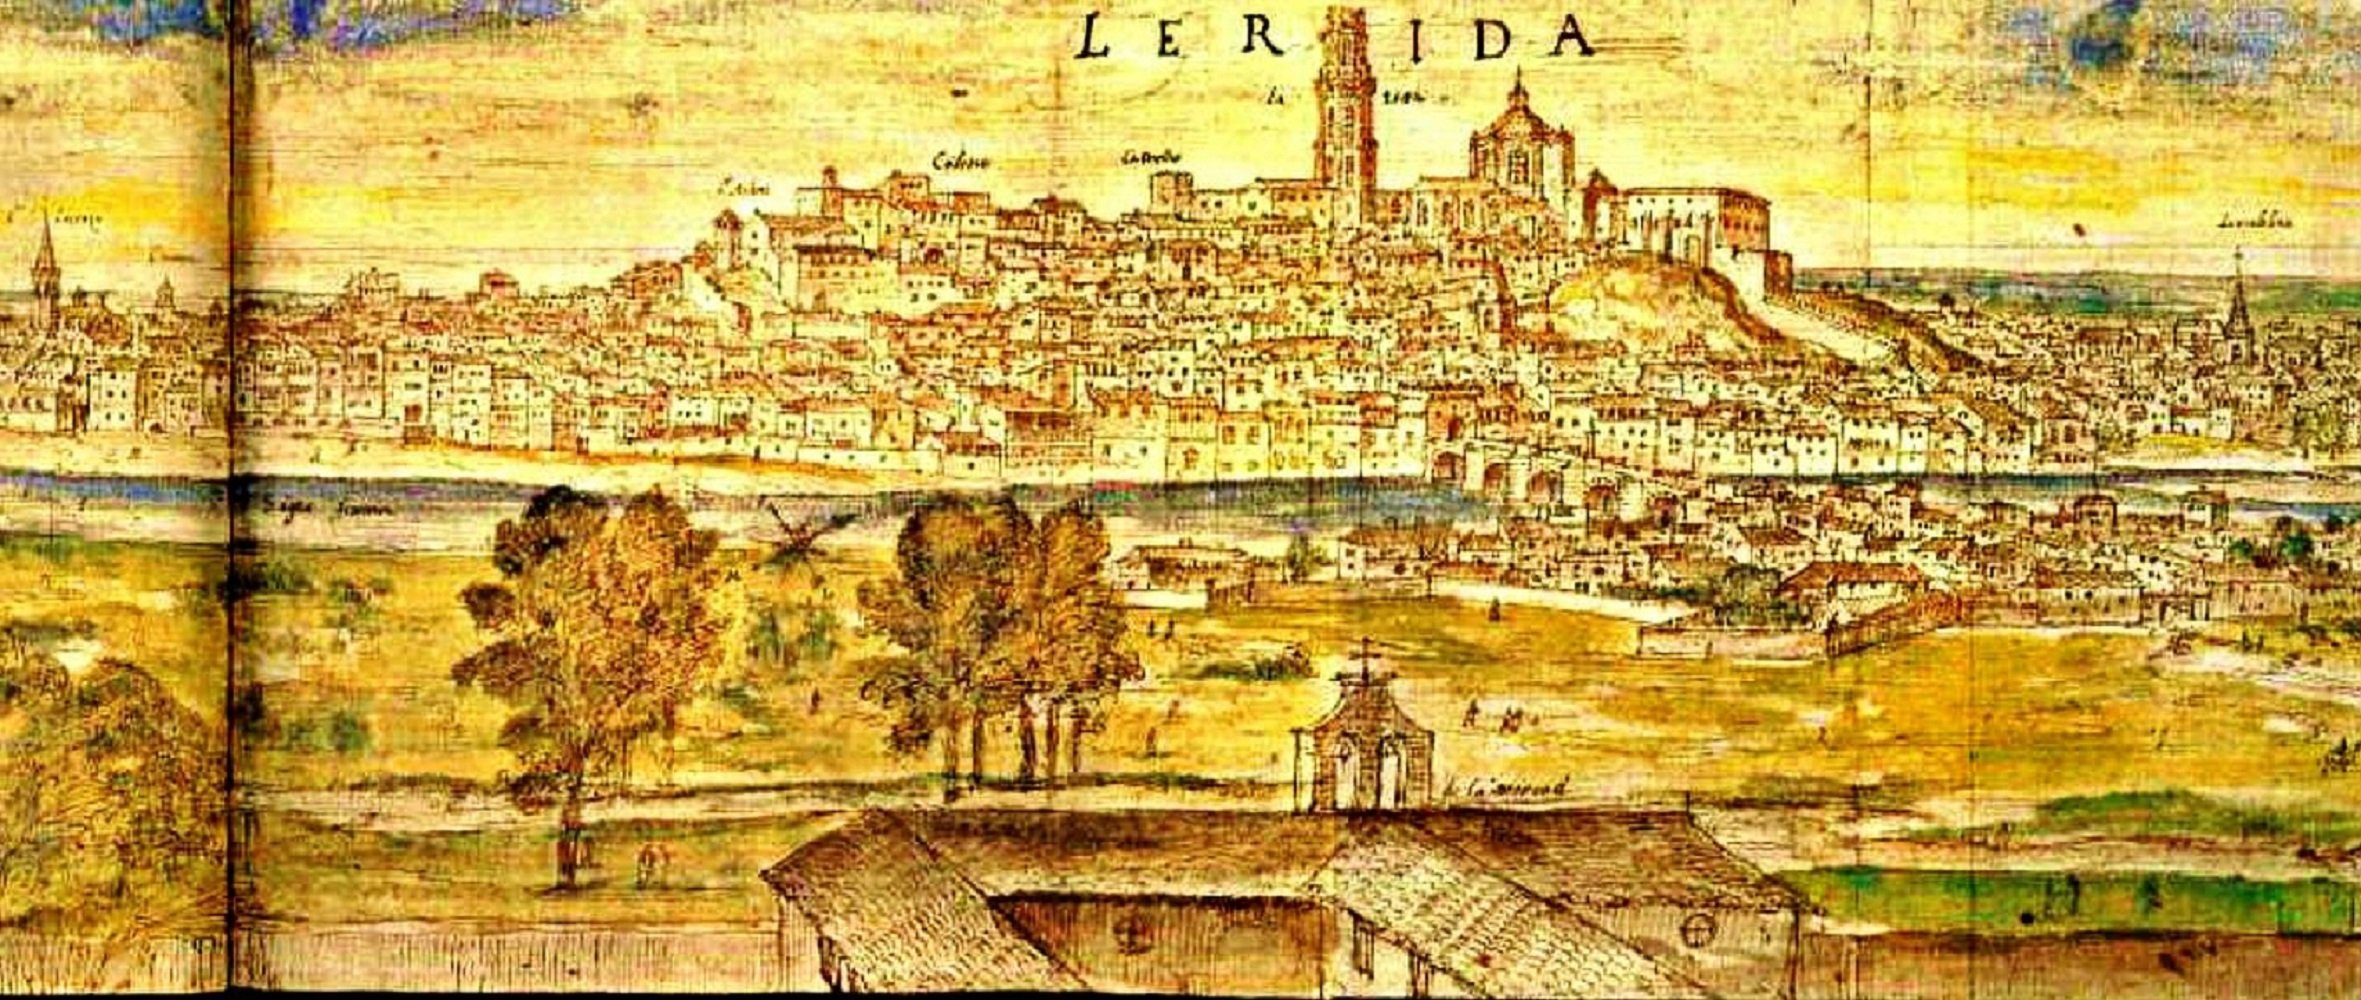 Se pone la primera piedra de la Seu Vella de Lleida